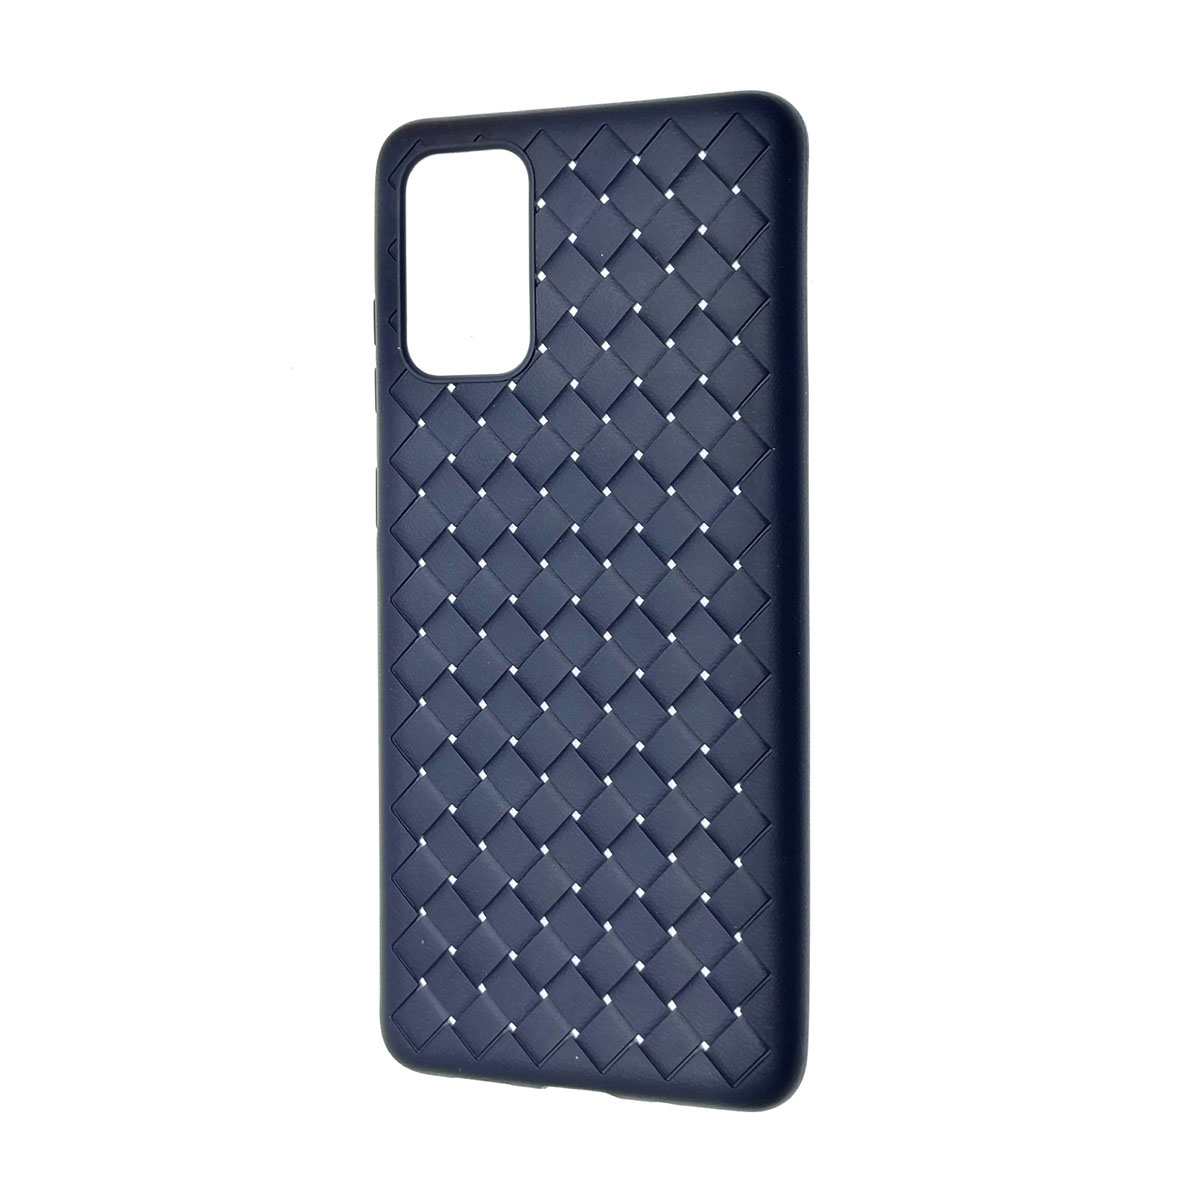 Чехол накладка для SAMSUNG Galaxy S20 Plus (SM-G985), силикон, плетение, цвет синий.